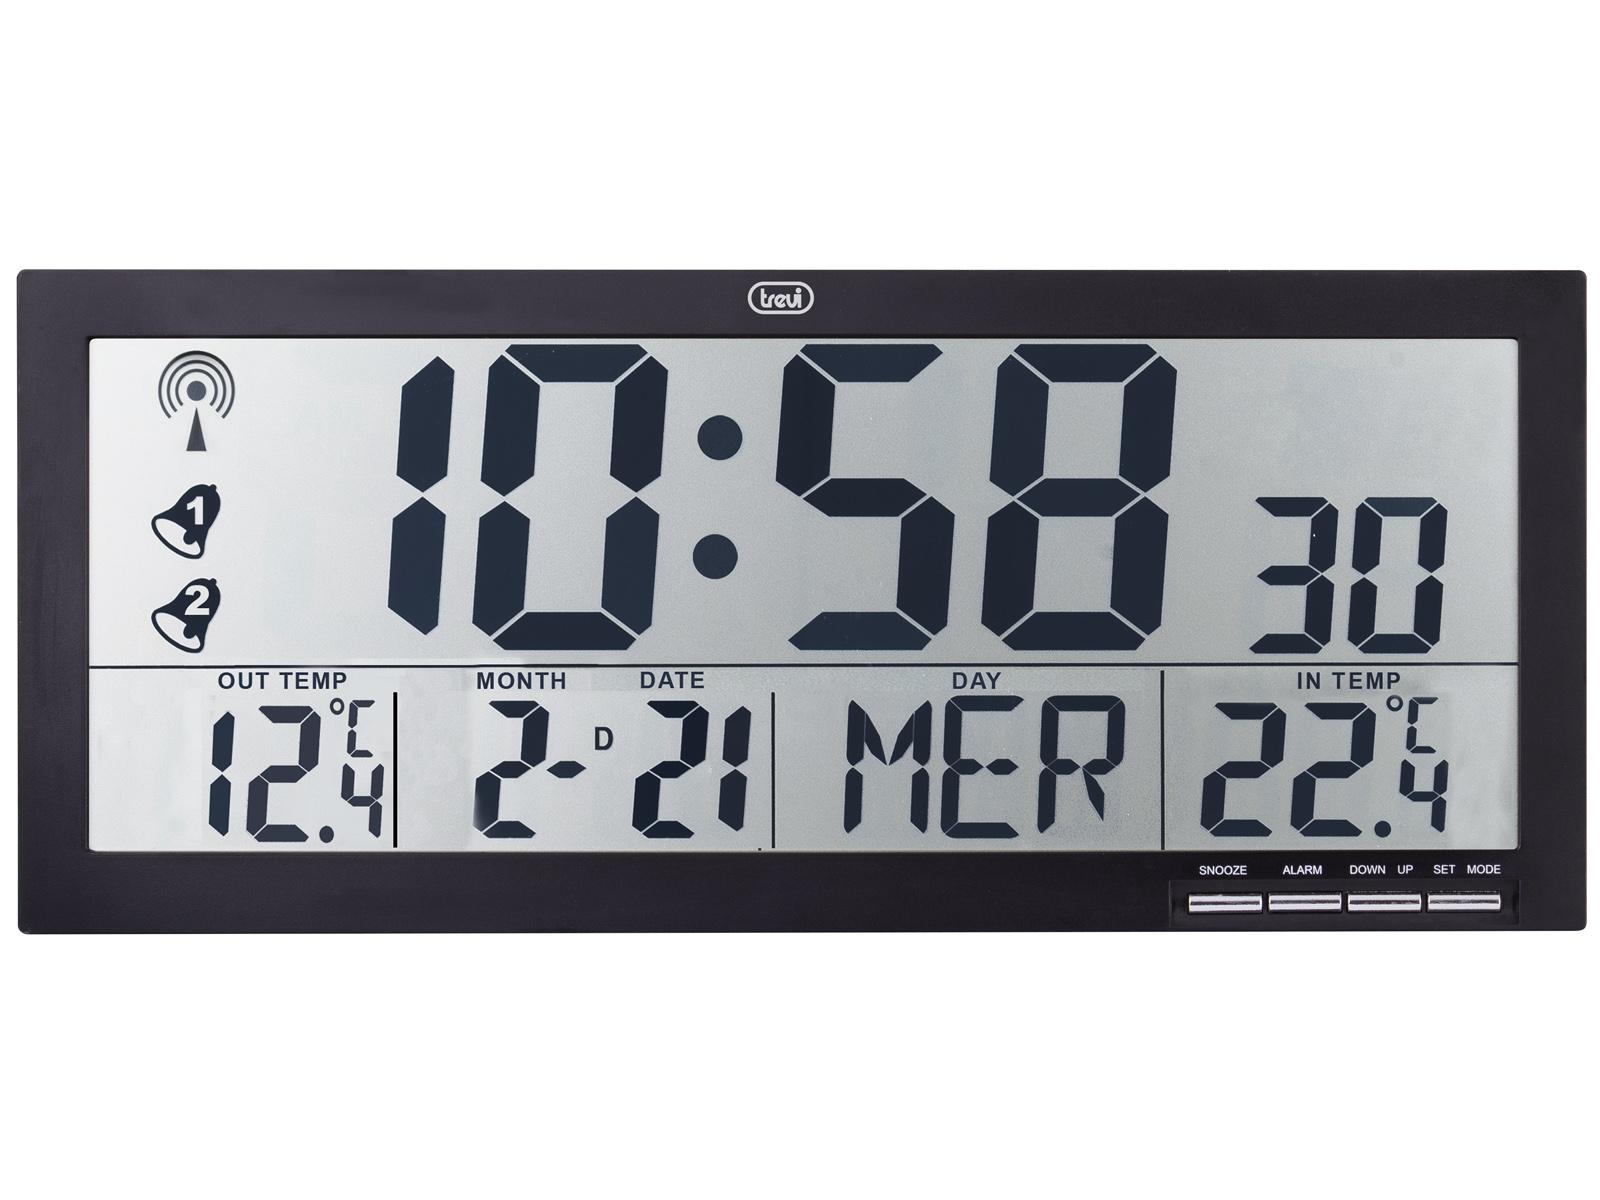 Orologio Digitale da Parete Radiocontrollato con Grande Display 42 cm Trevi  OM 3528 D Bianco